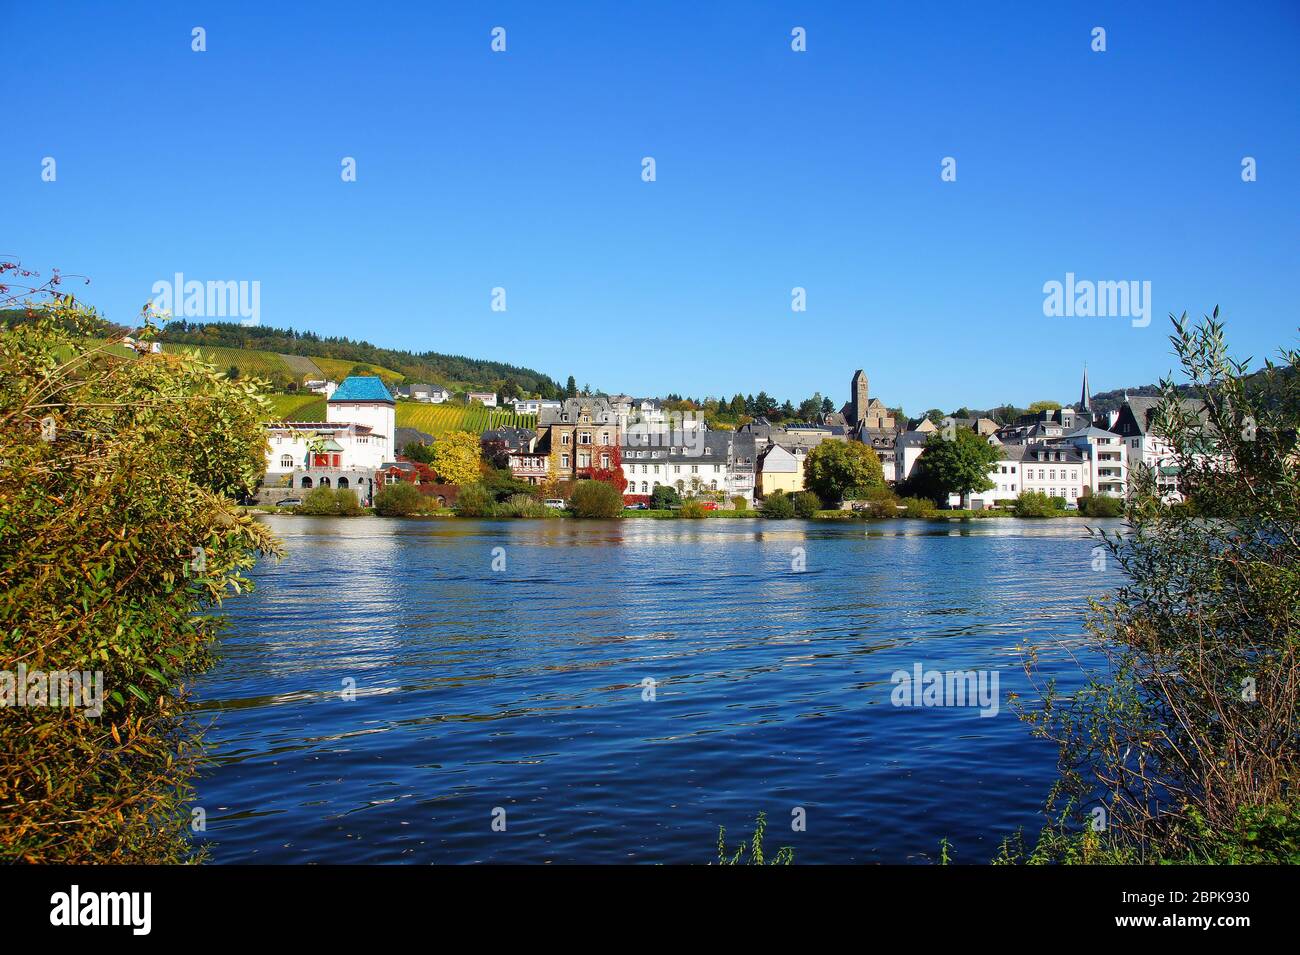 Stadt Traben-Trarbach an der Mosel im Herbst, bekannt für ihren Wein und die Jugendstilbauten Stock Photo